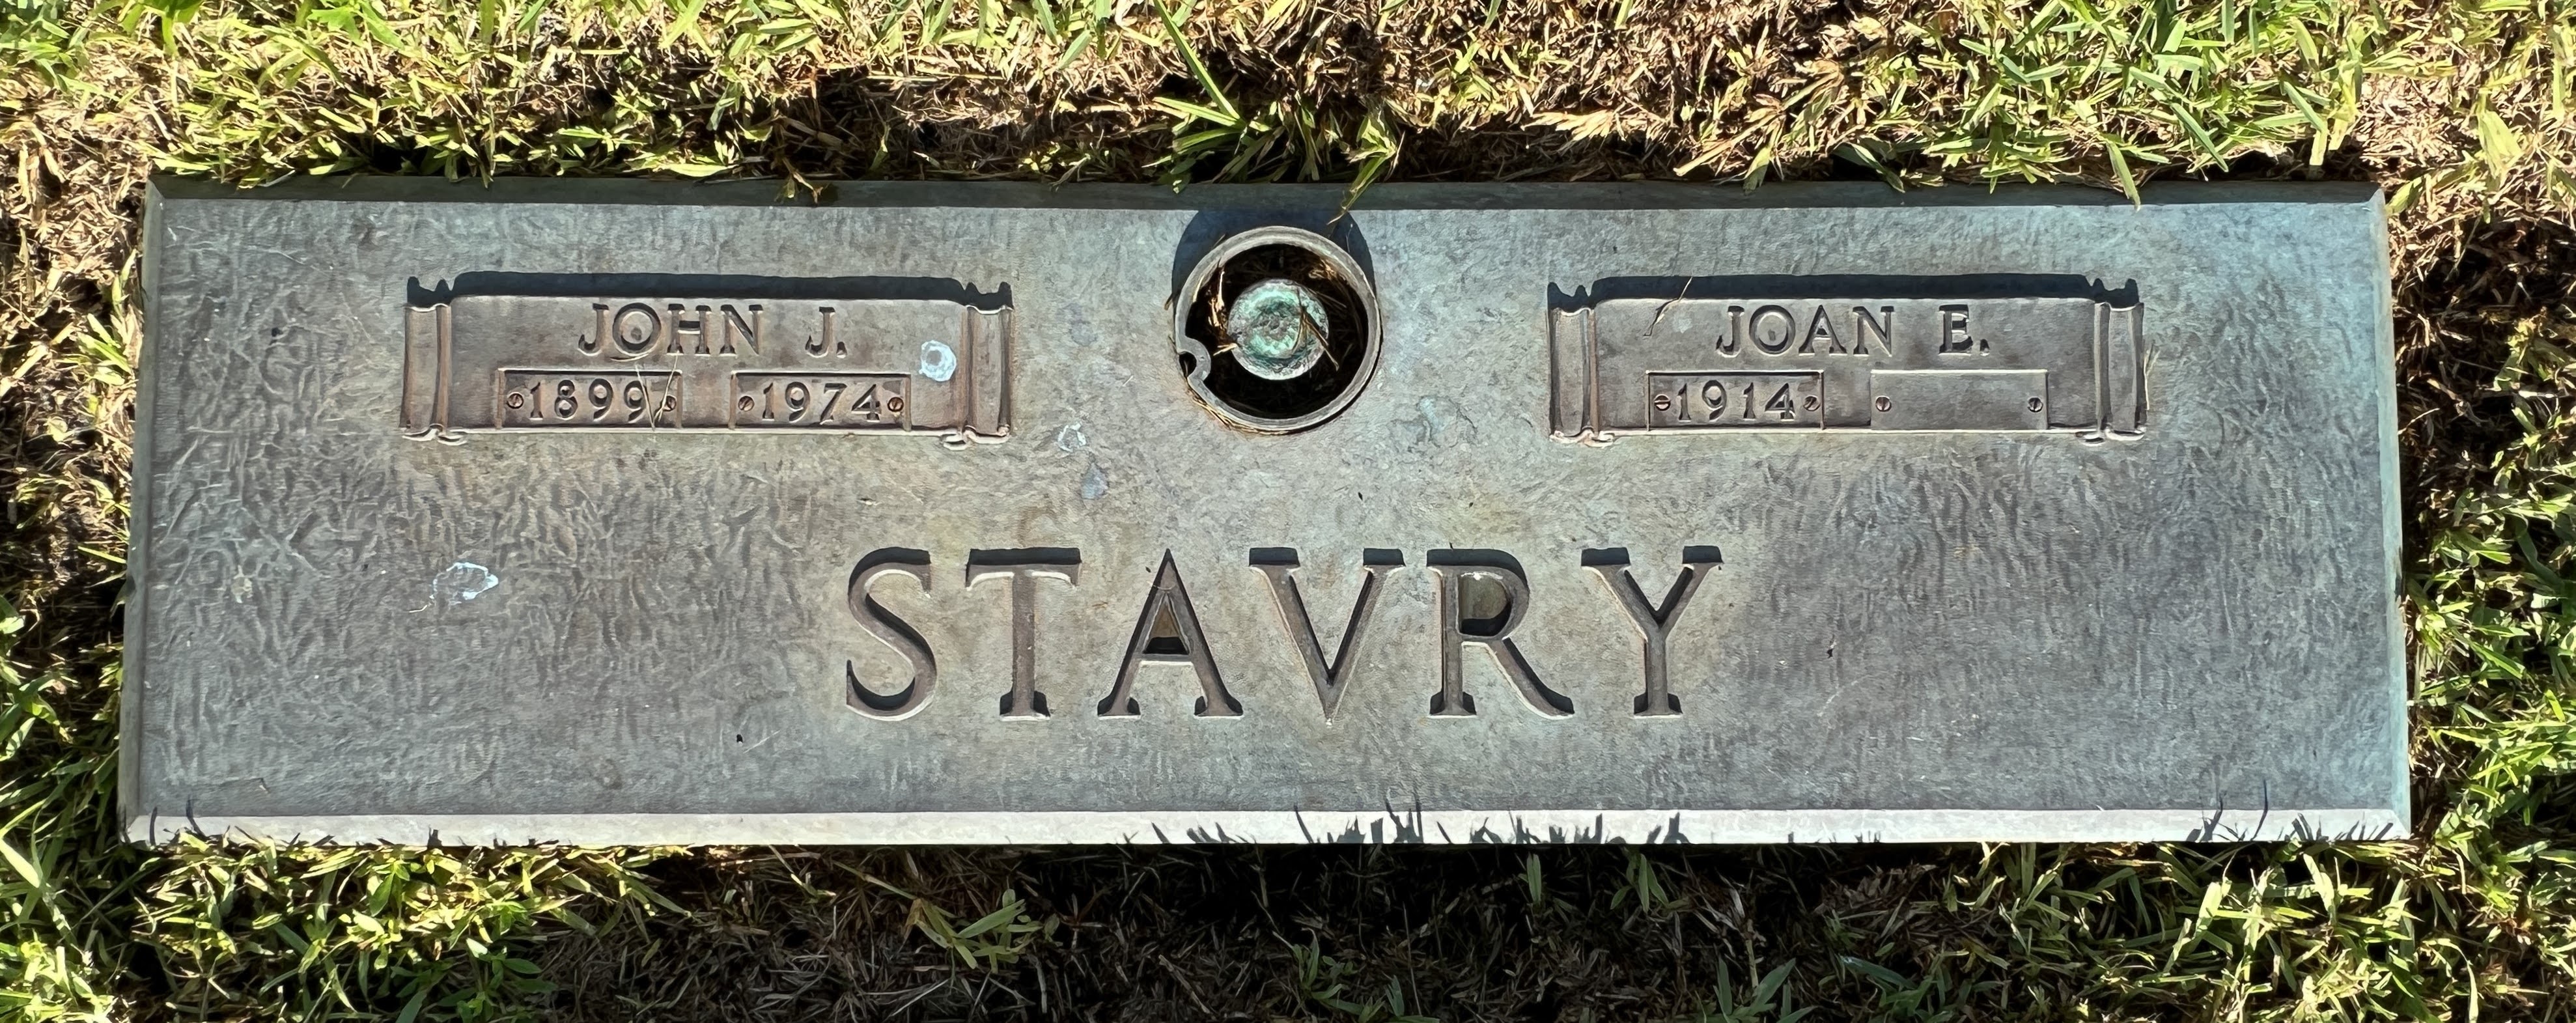 John J Stavry